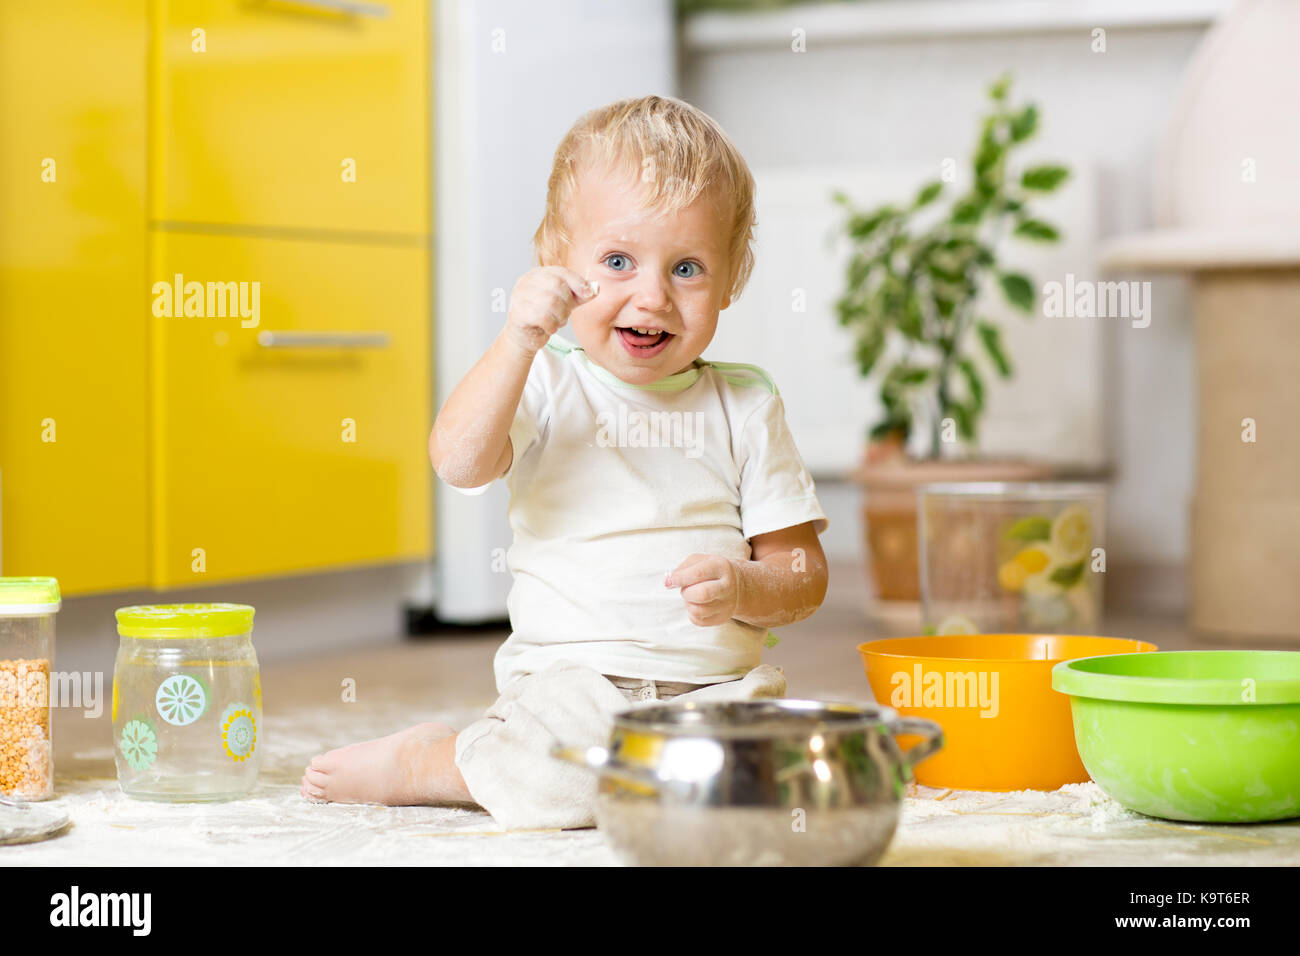 Petit Enfant Garçon jouant avec des ustensiles et des denrées alimentaires en cuisine domestique Banque D'Images